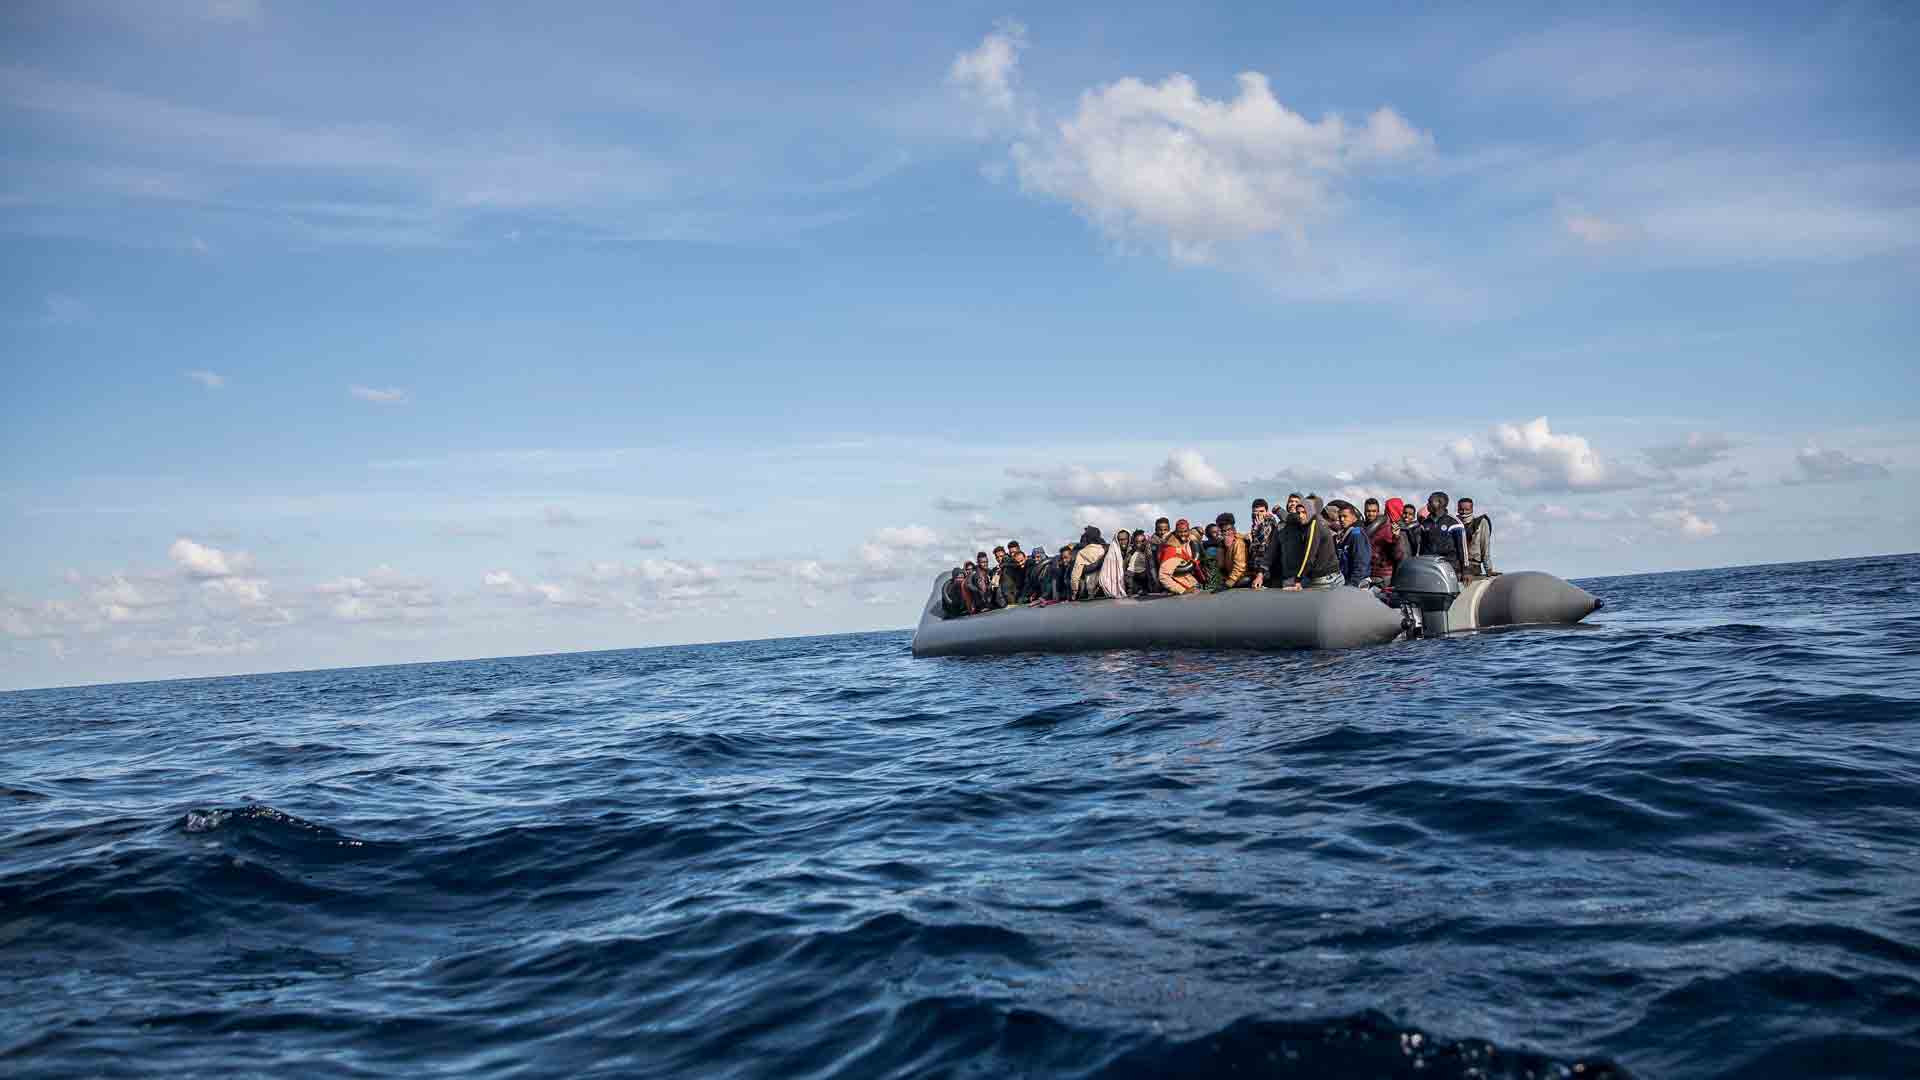 Unos 400 niños migrantes llegaron a las costas europeas las dos primeras semanas de enero